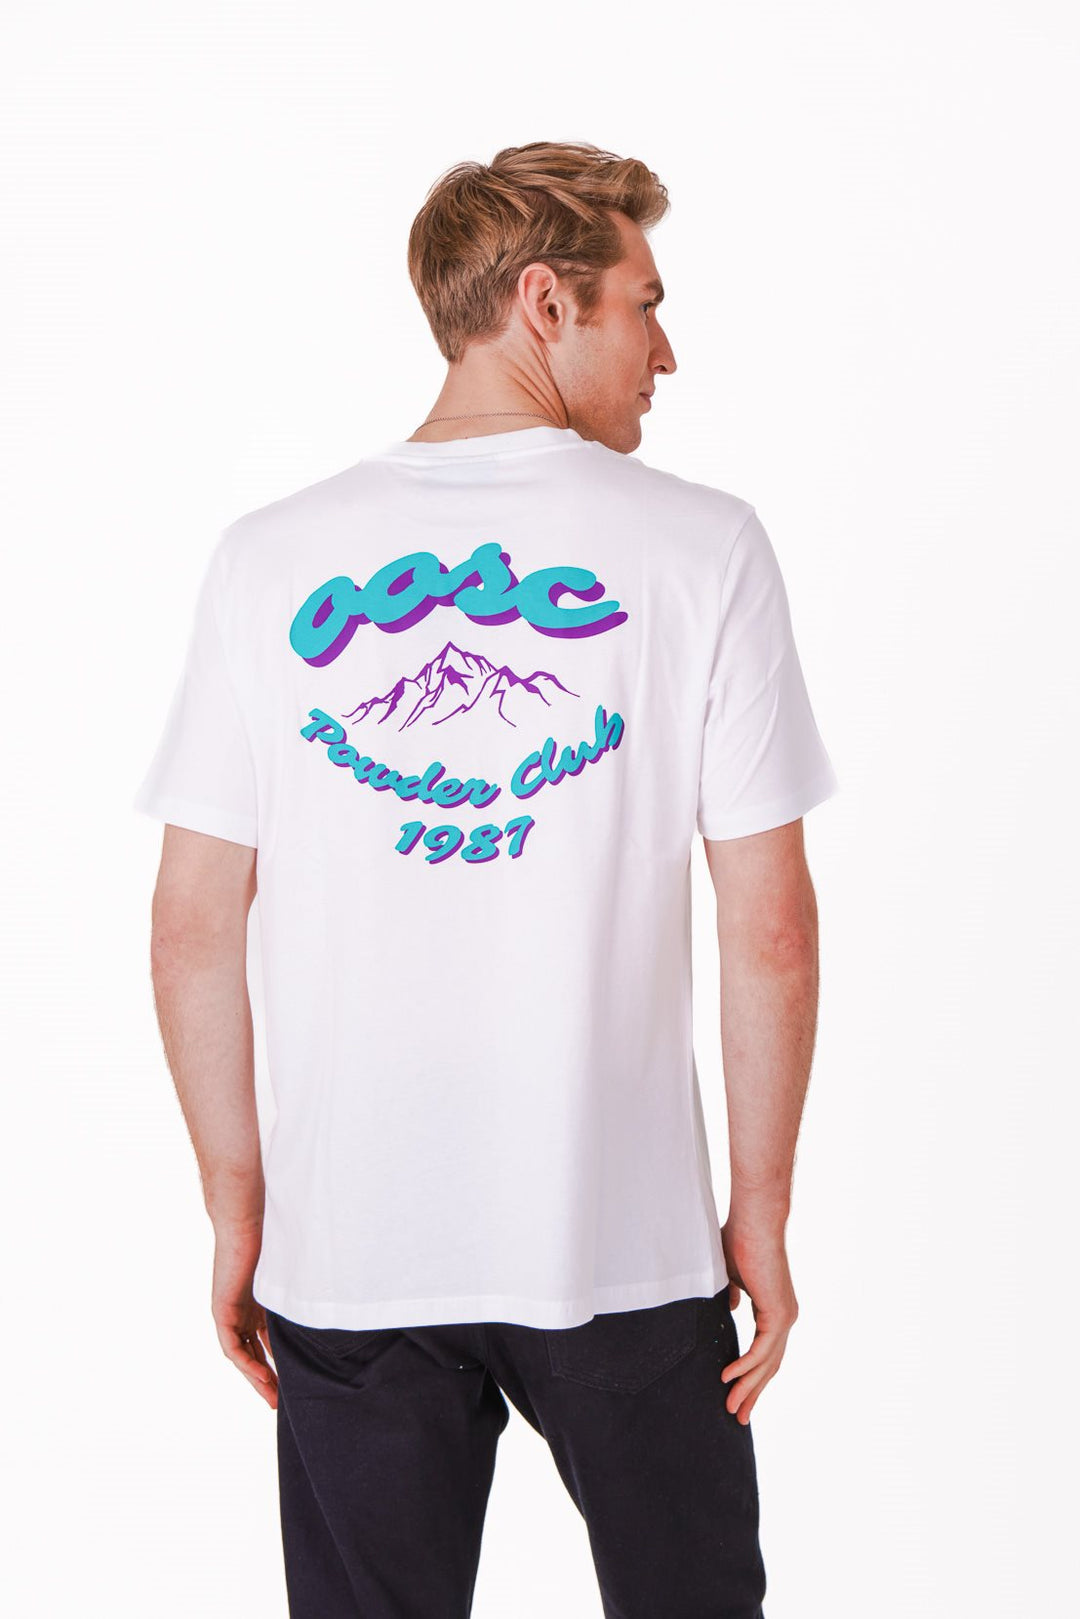 T-shirt Club de poudre